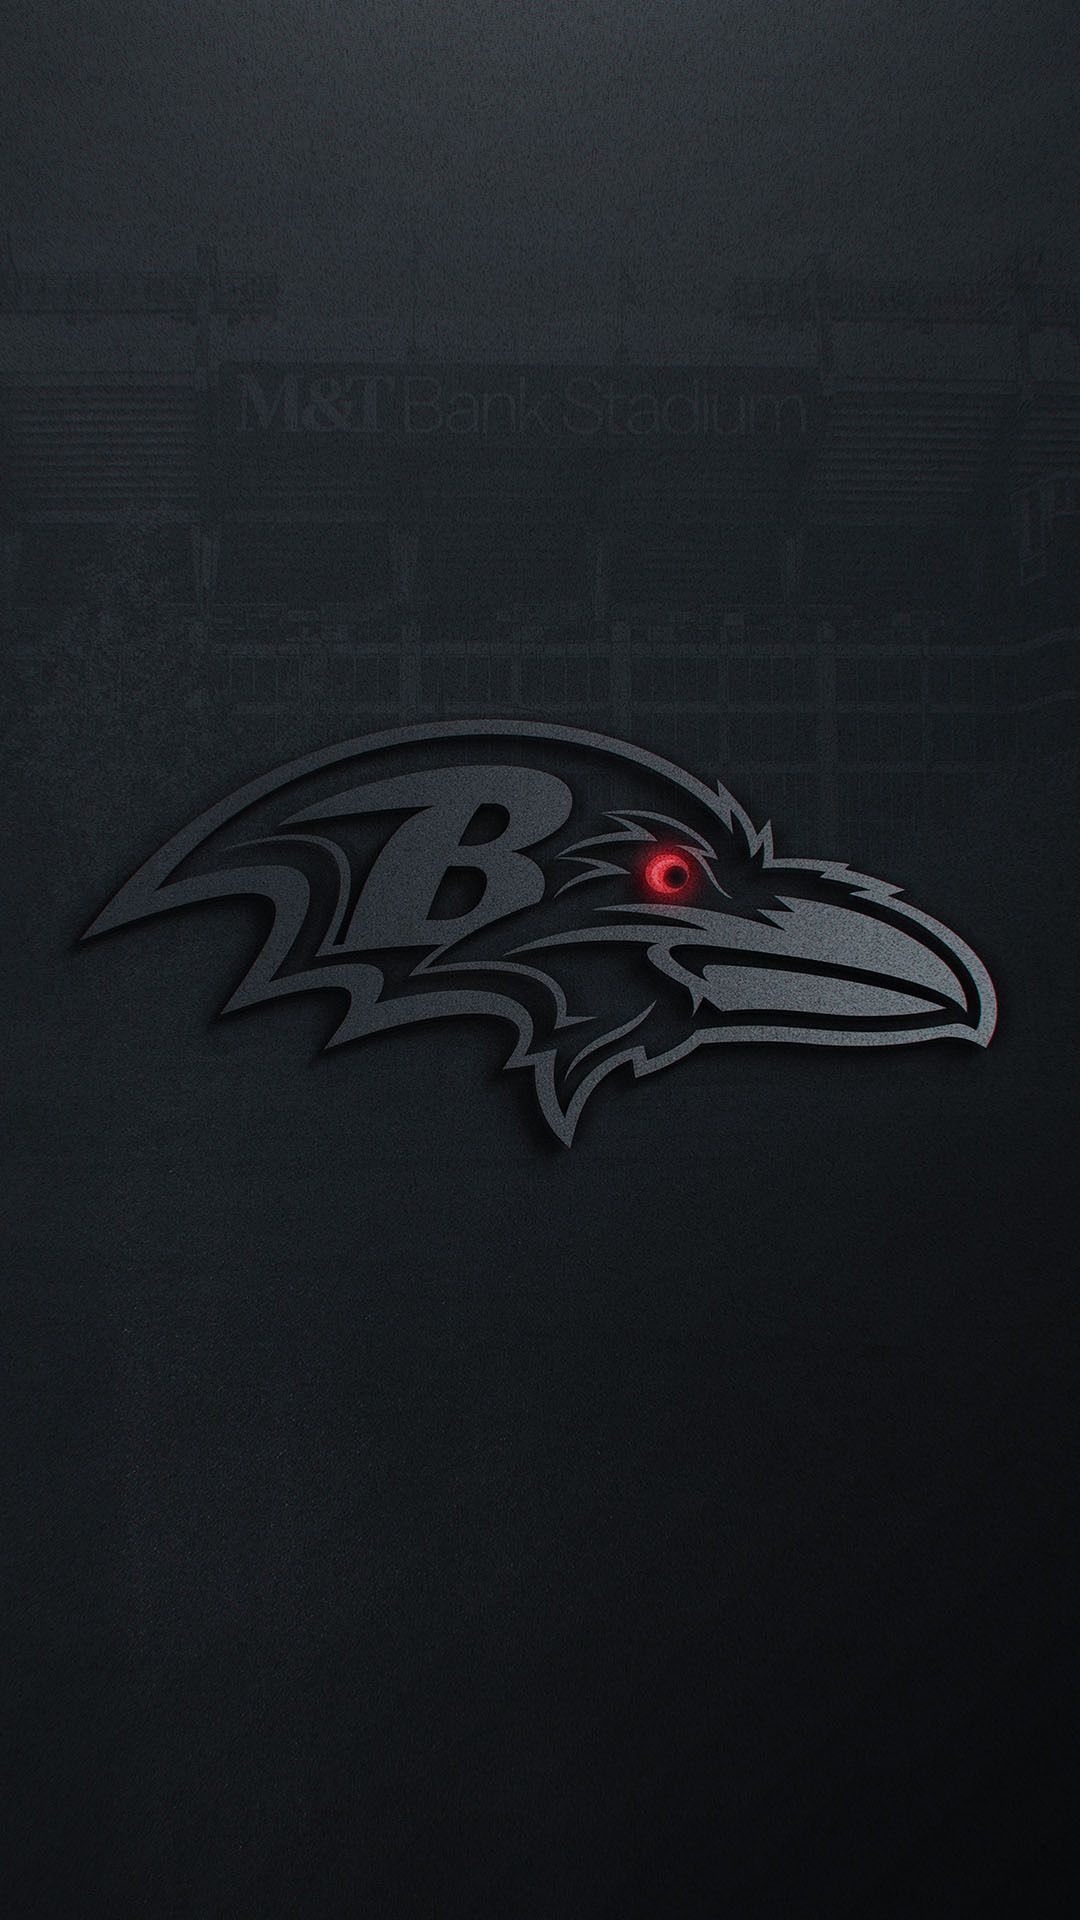 Ravens Wallpapers | Baltimore Ravens – 